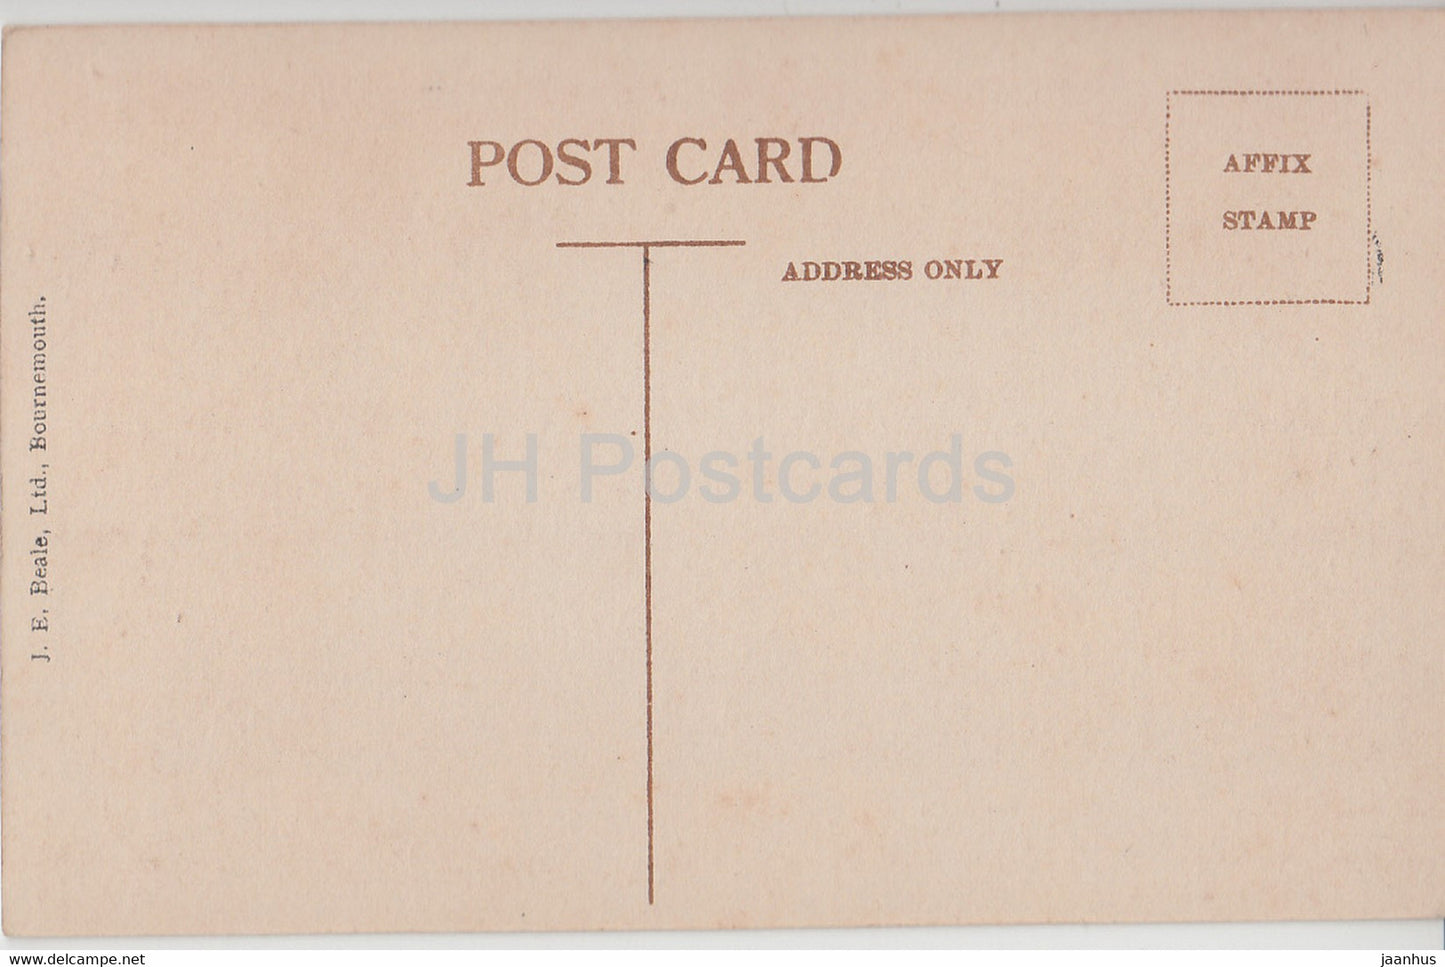 The Pine Walk - Bournemouth - 3677 - alte Postkarte - England - Vereinigtes Königreich - unbenutzt